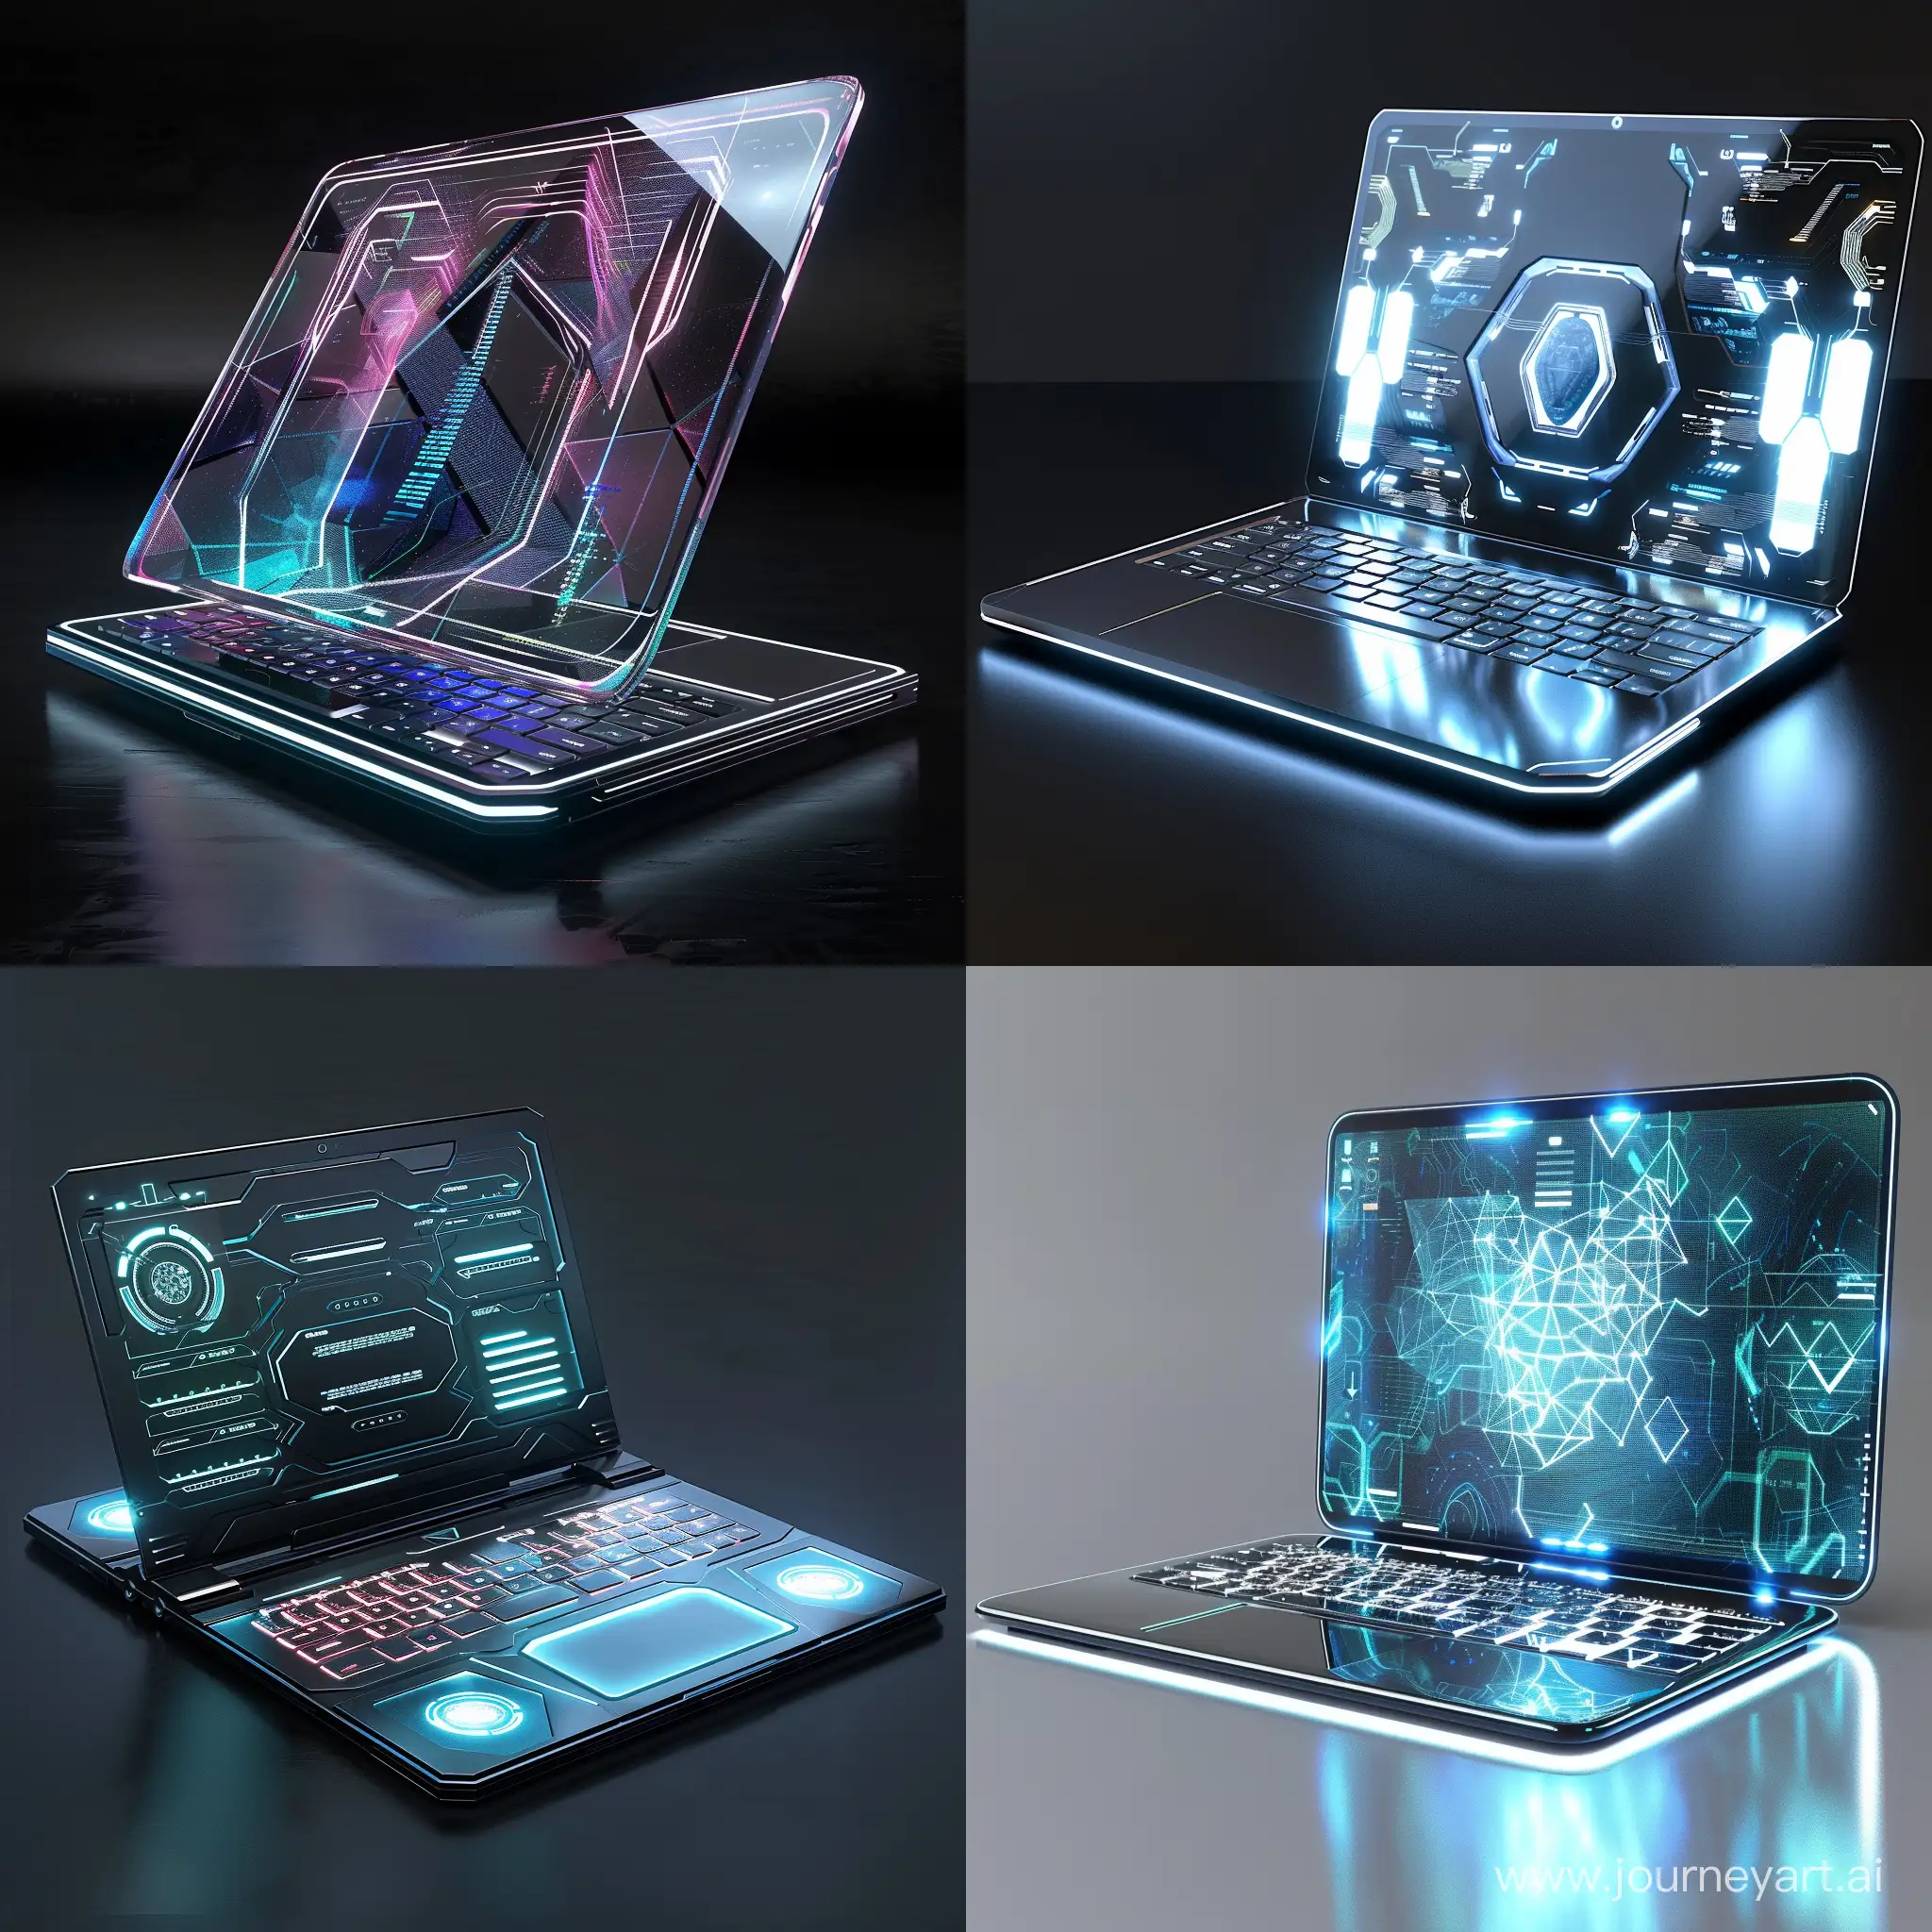 Futuristic laptop, composite smart materials, octane render